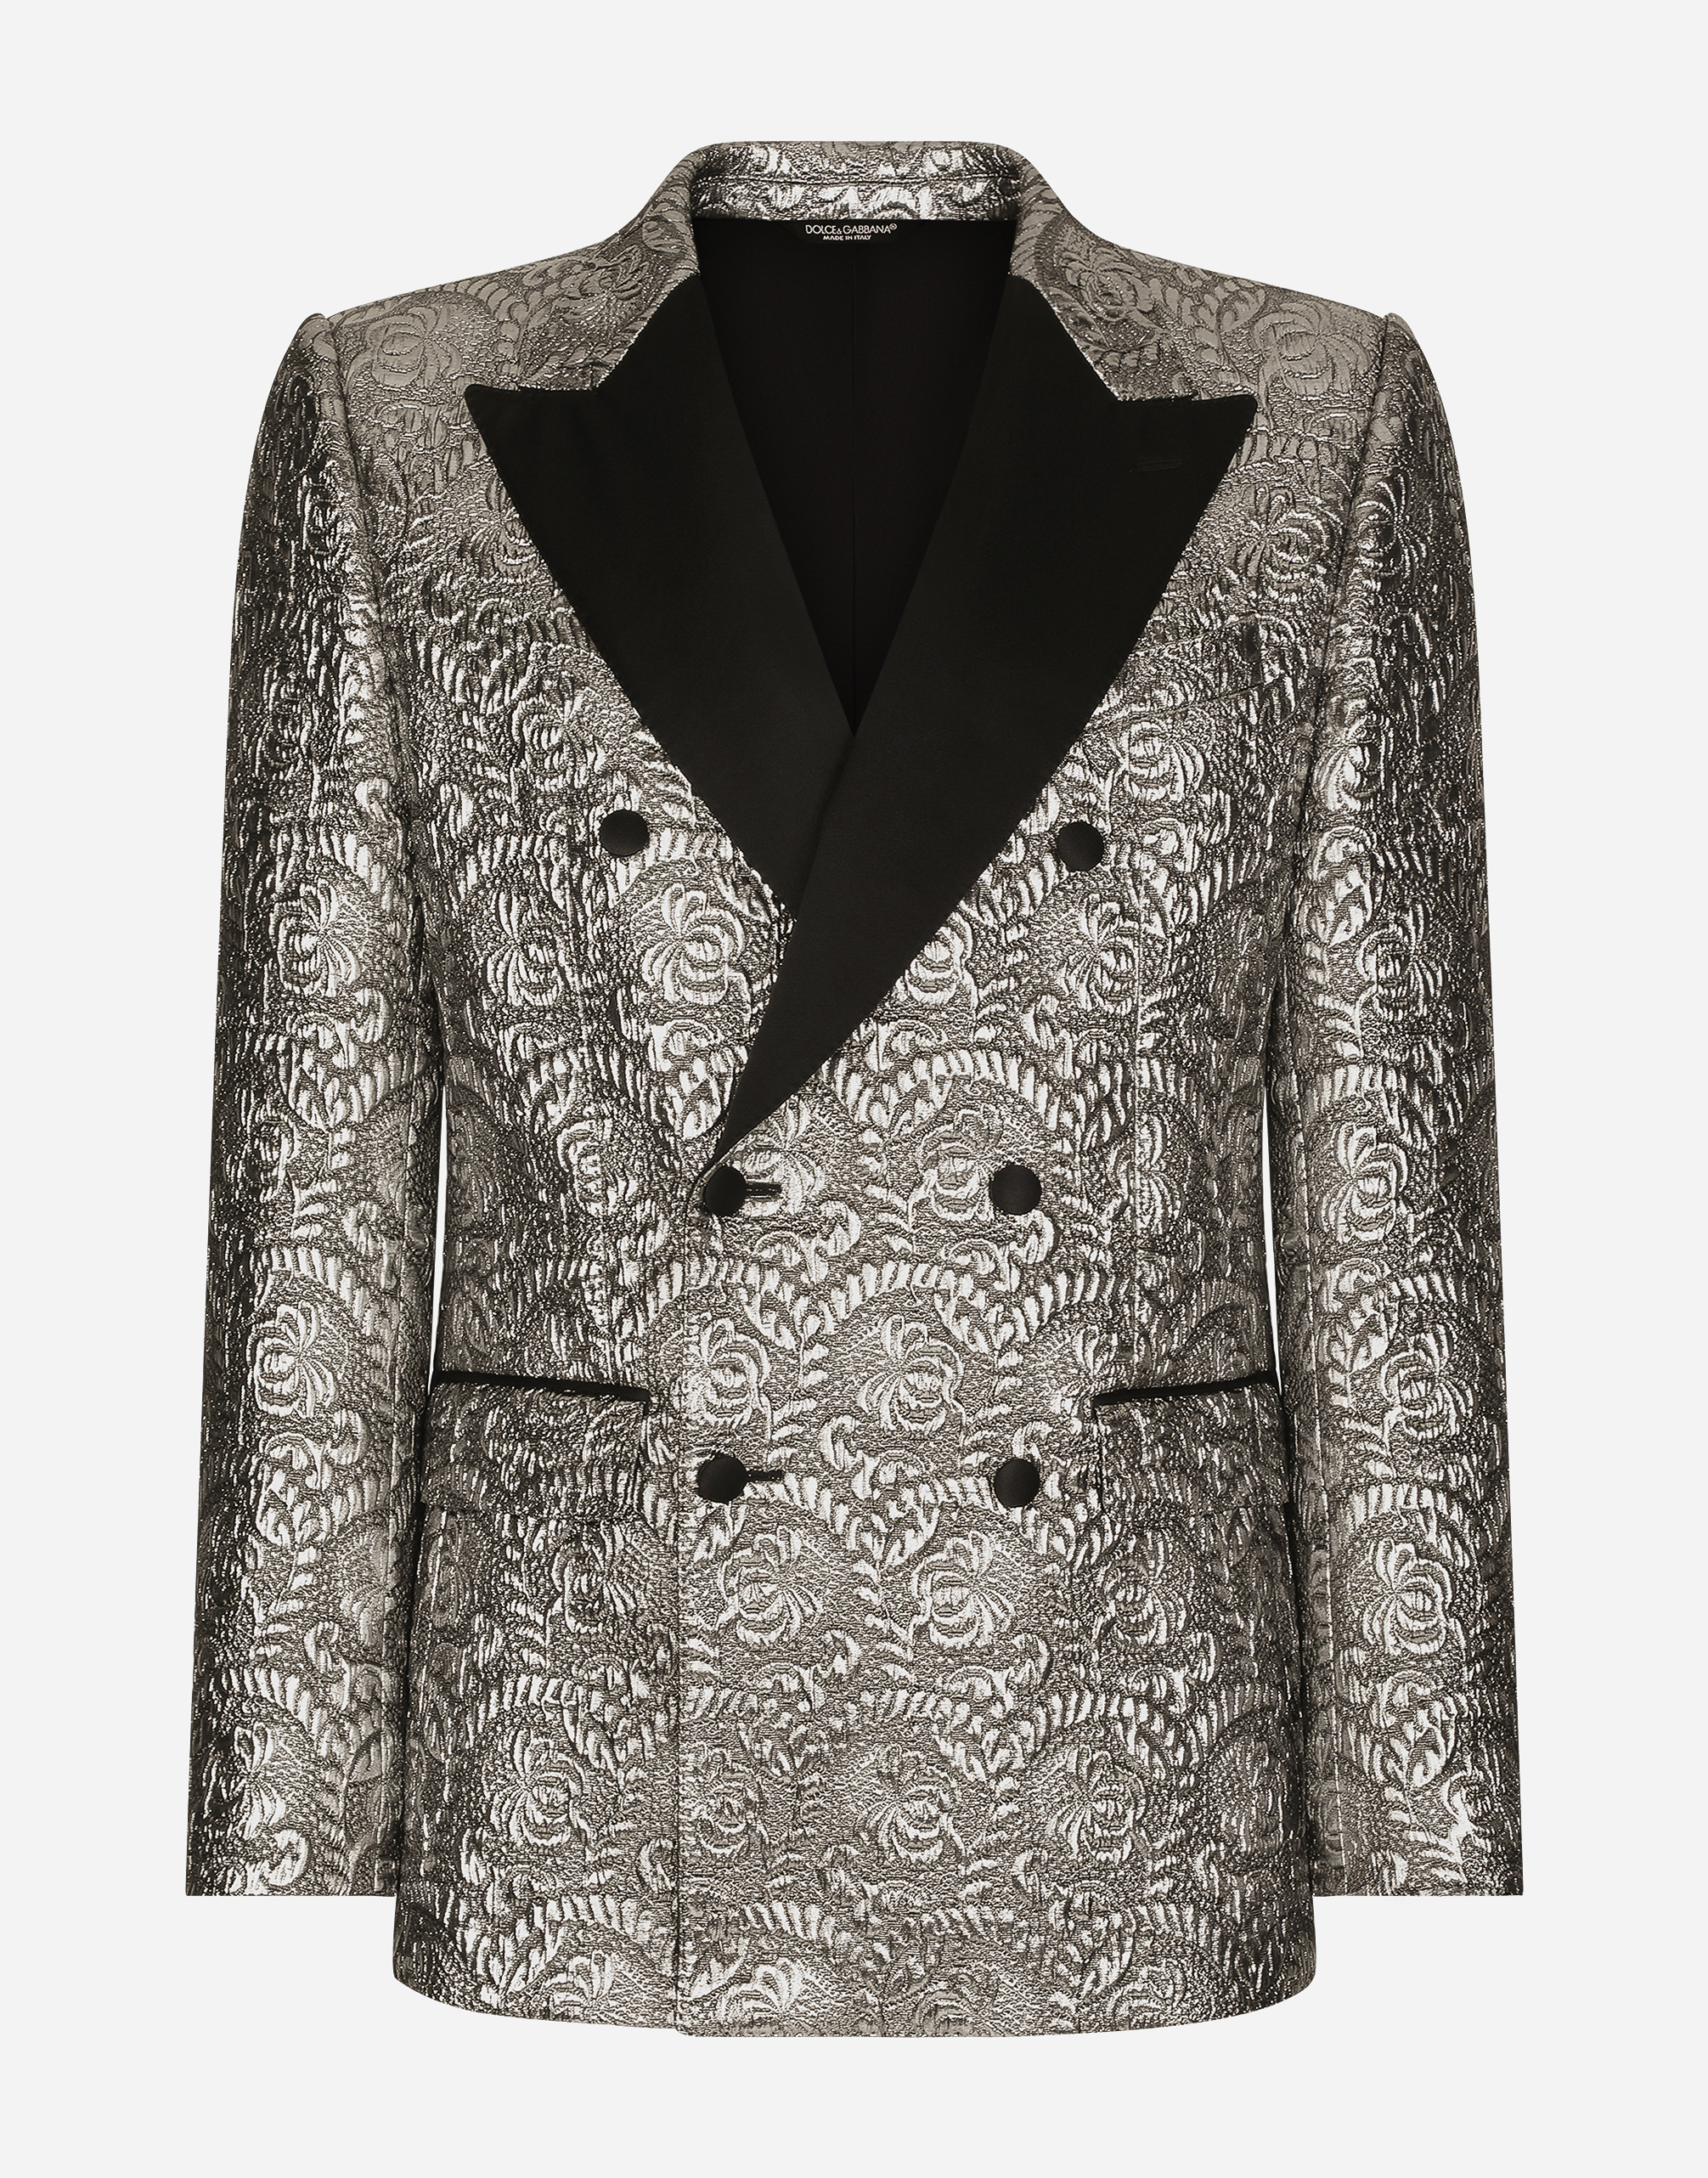 Sicilia double-breasted lamé jacquard tuxedo jacket